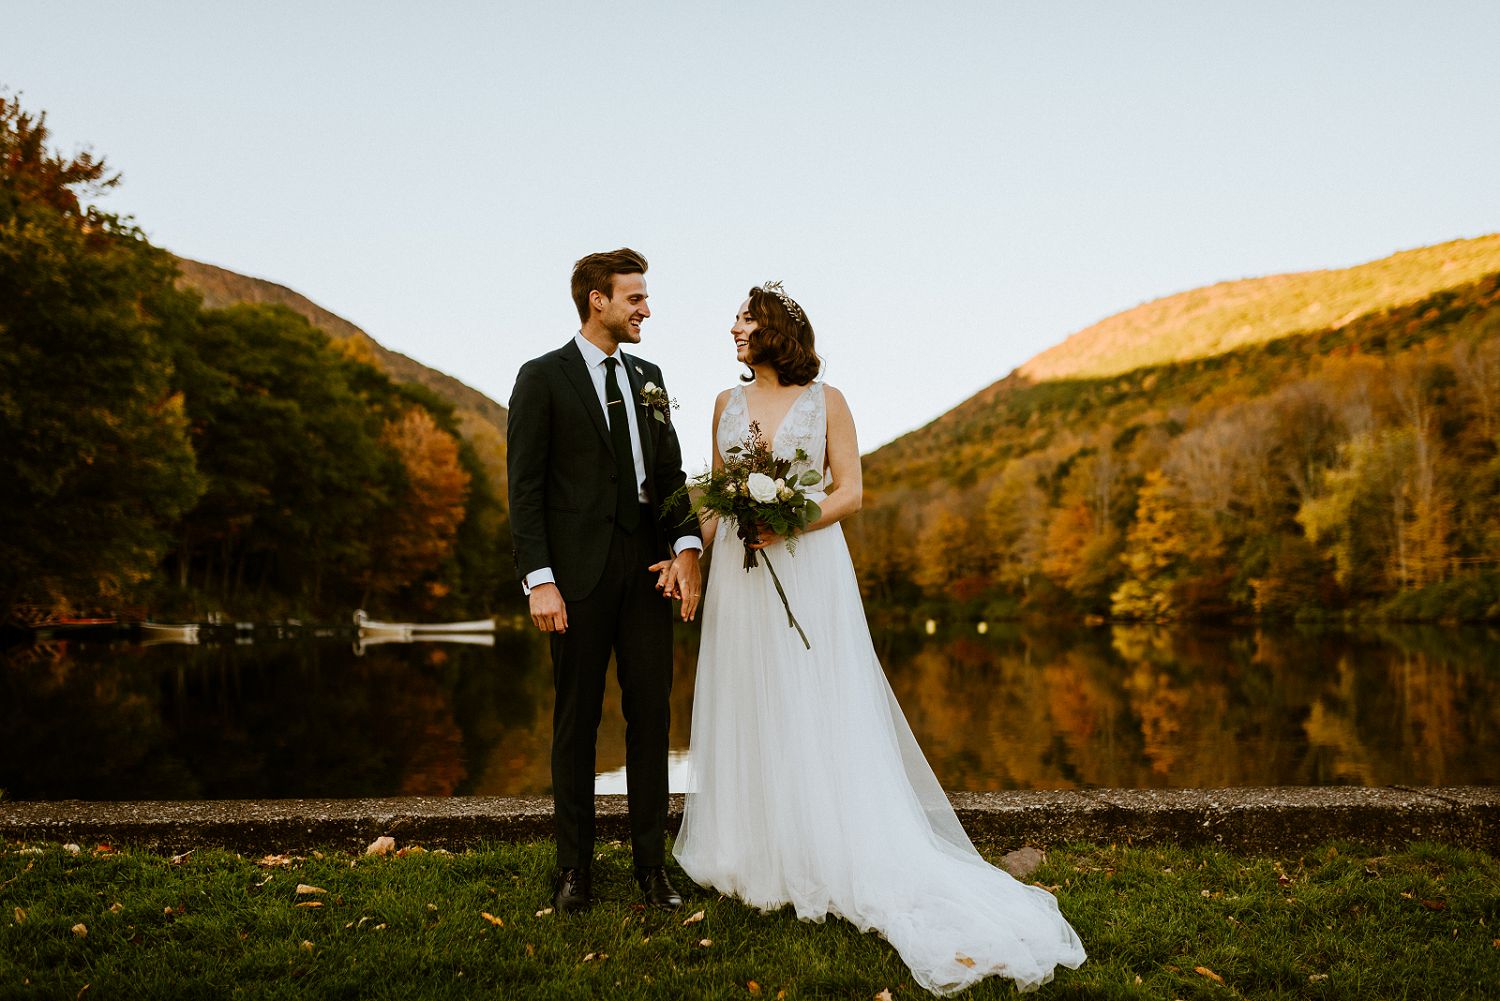 fall wedding portrait